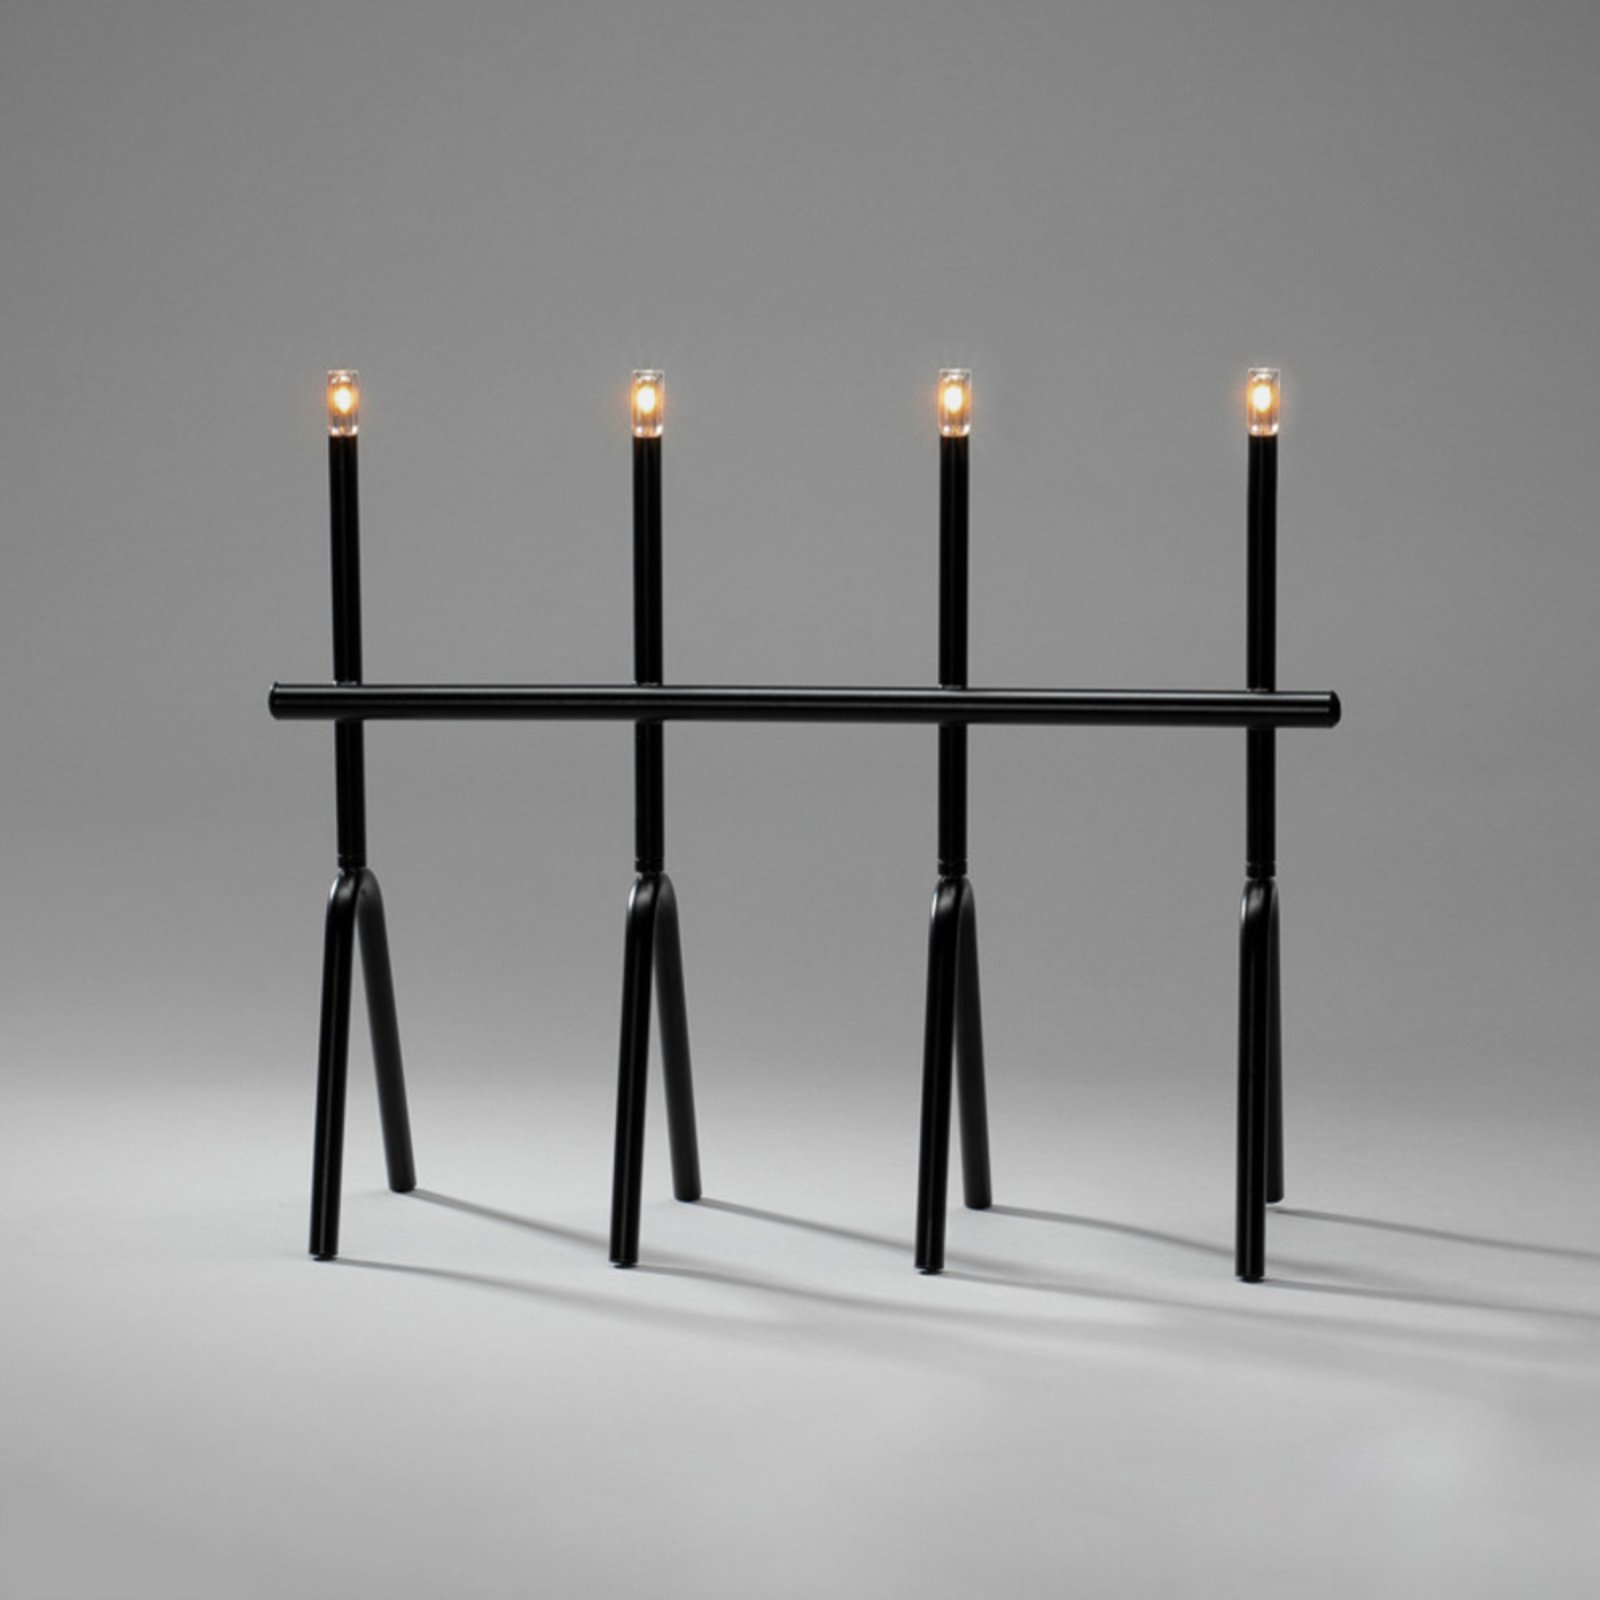 LED candelabra black 4-bulb height 39 cm